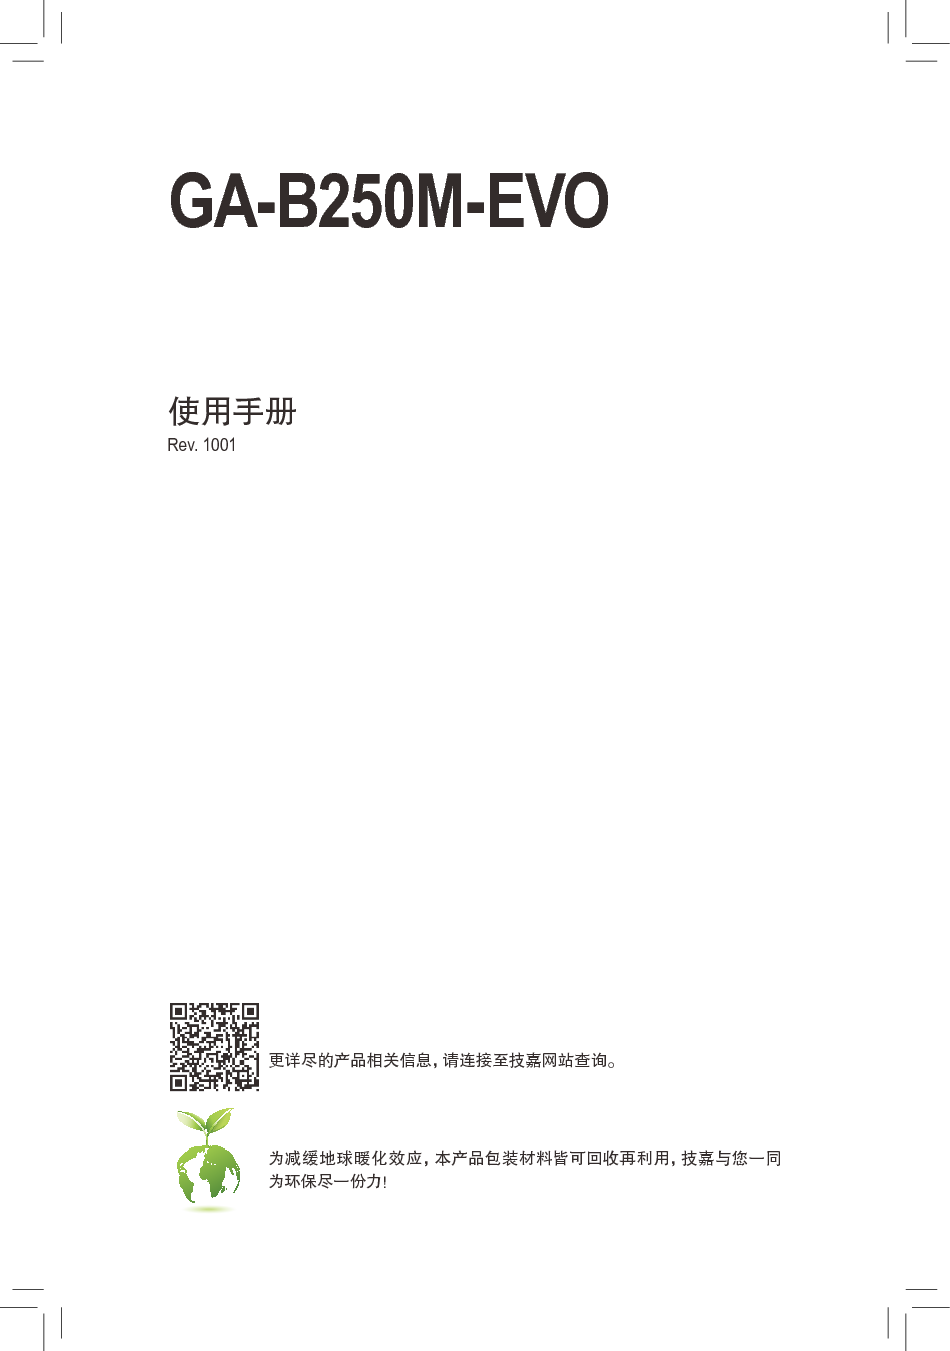 技嘉 Gigabyte GA-B250M-EVO 使用手册 封面